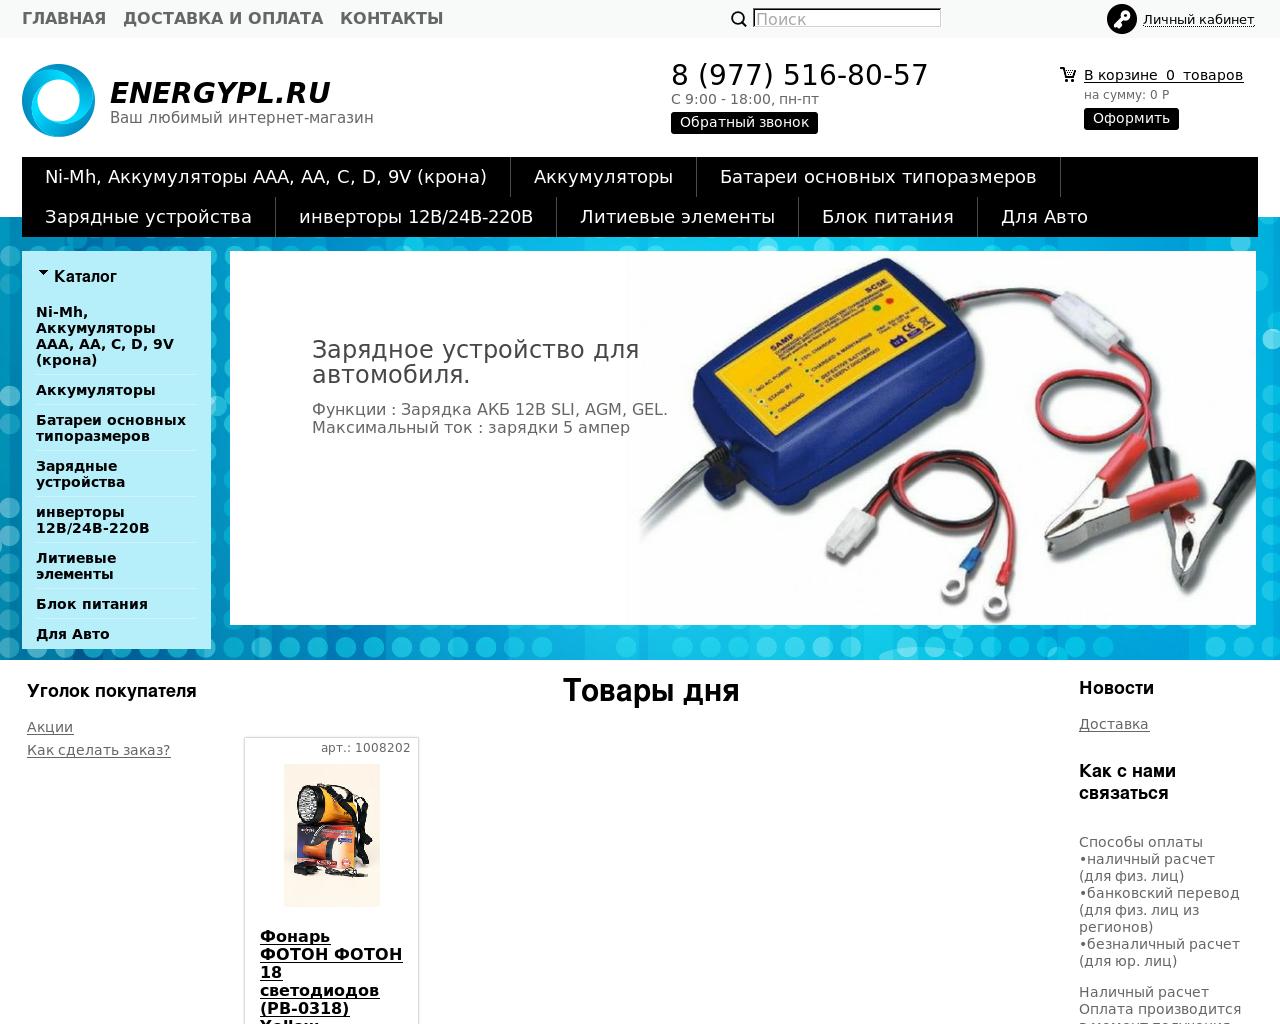 Изображение сайта energypl.ru в разрешении 1280x1024